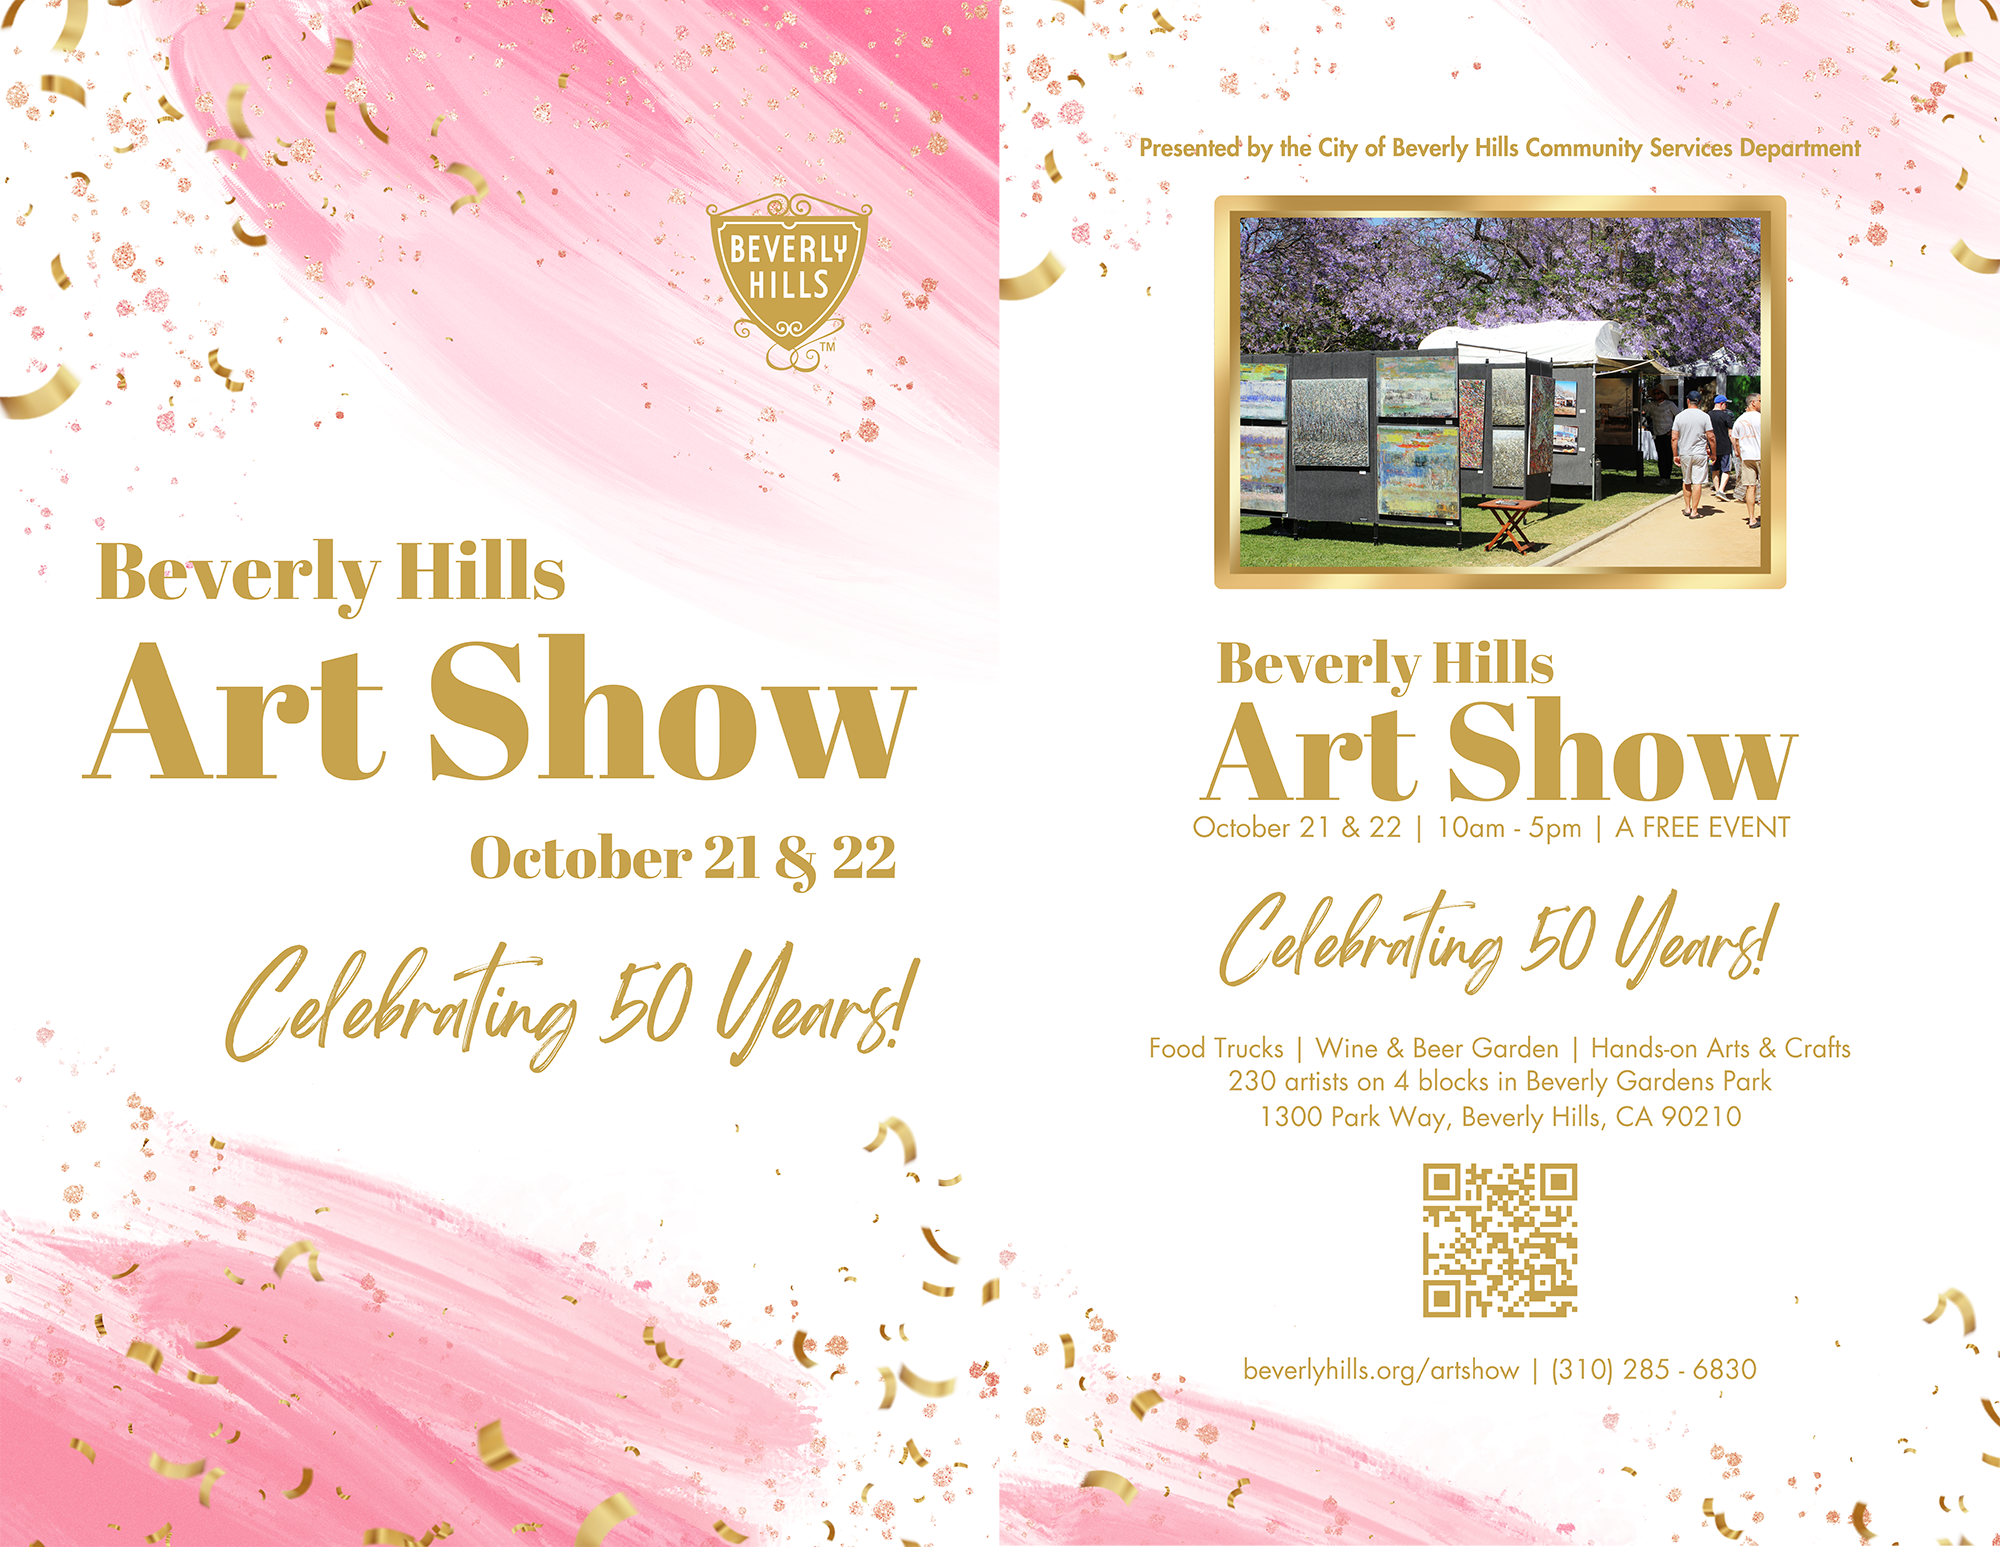 Beverly Hills Art Show Oct. 21-22. 23